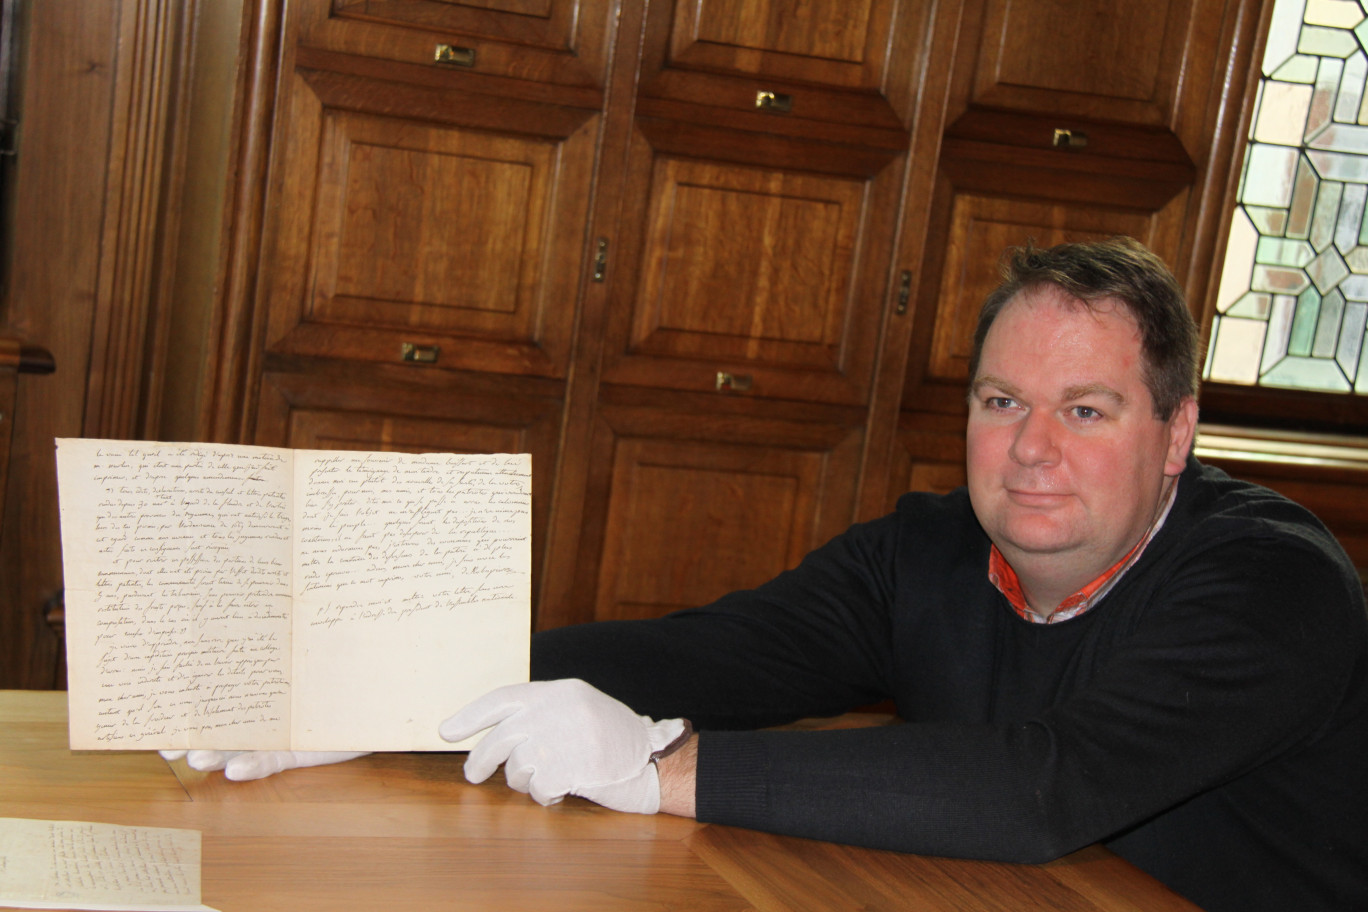 Laurent Wiart, directeur de la médiathèque d’Arras, présente avec fierté ce manuscrit exceptionnel.